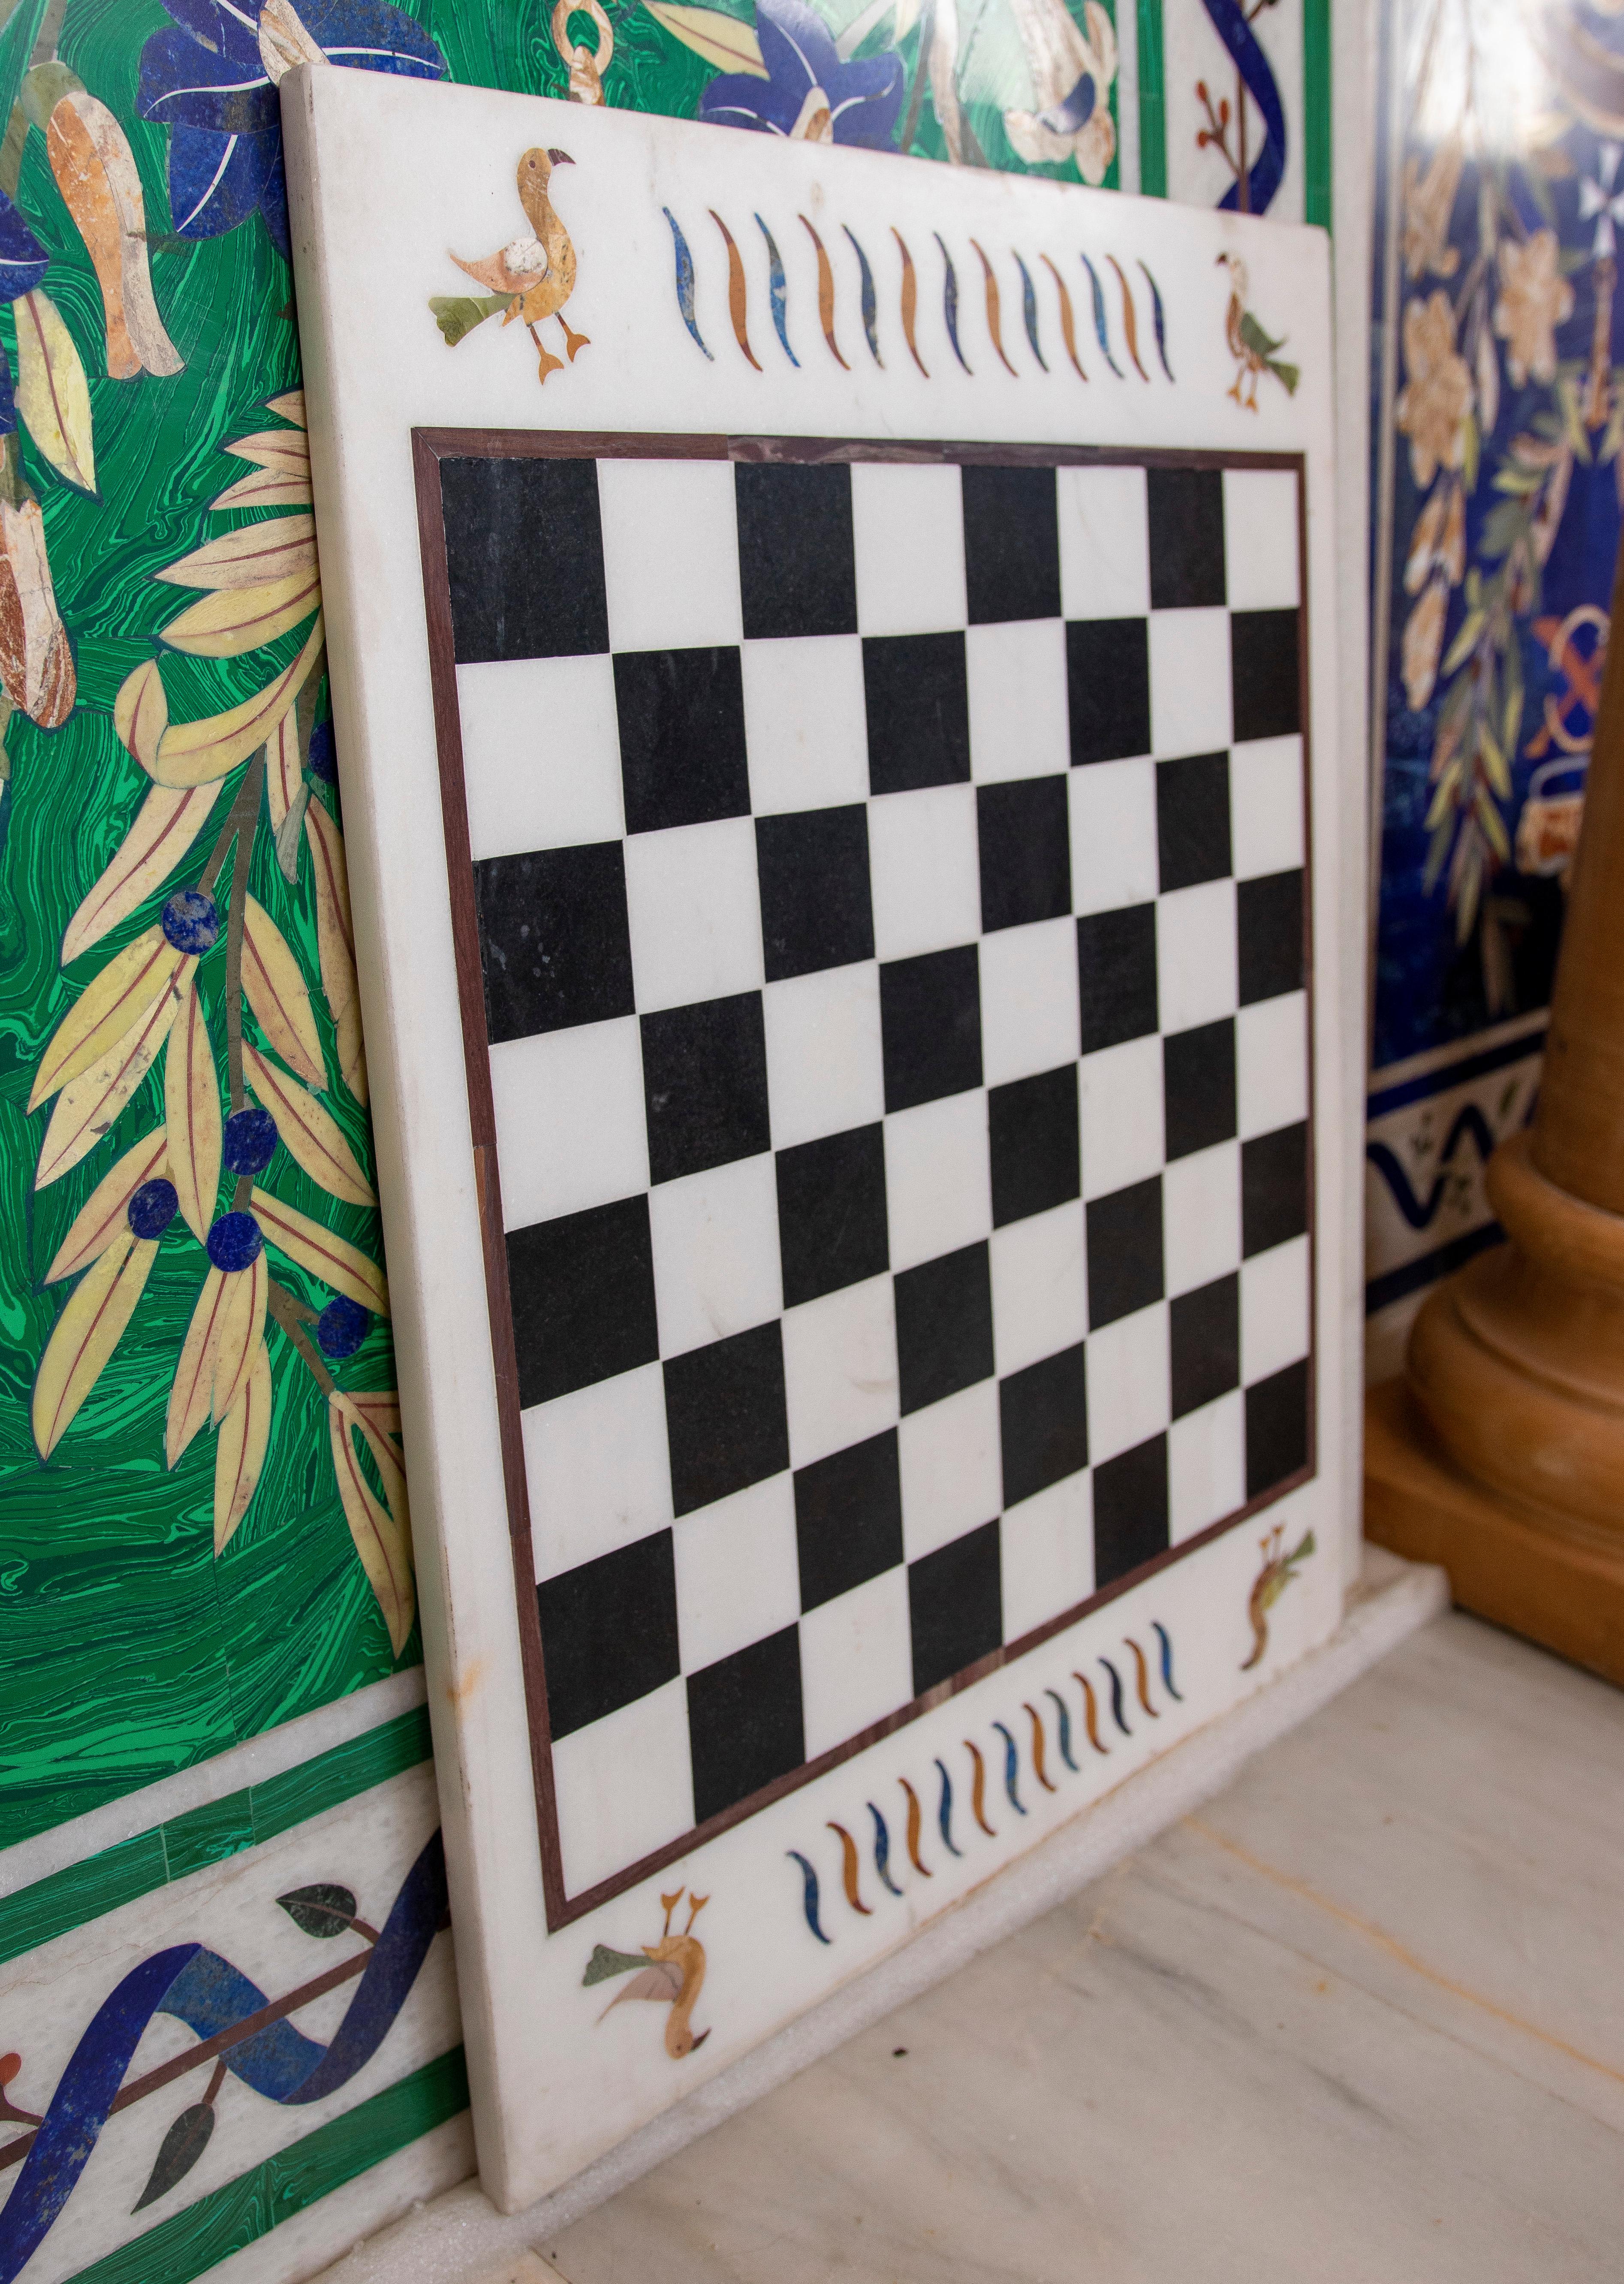 1990er Jahre Spanische Pietra Dura Mosaik Tischplatte mit Schachbrett, handgefertigt mit Halbedelsteinen wie blauem Lapislazuli und grünem Malachit.
      